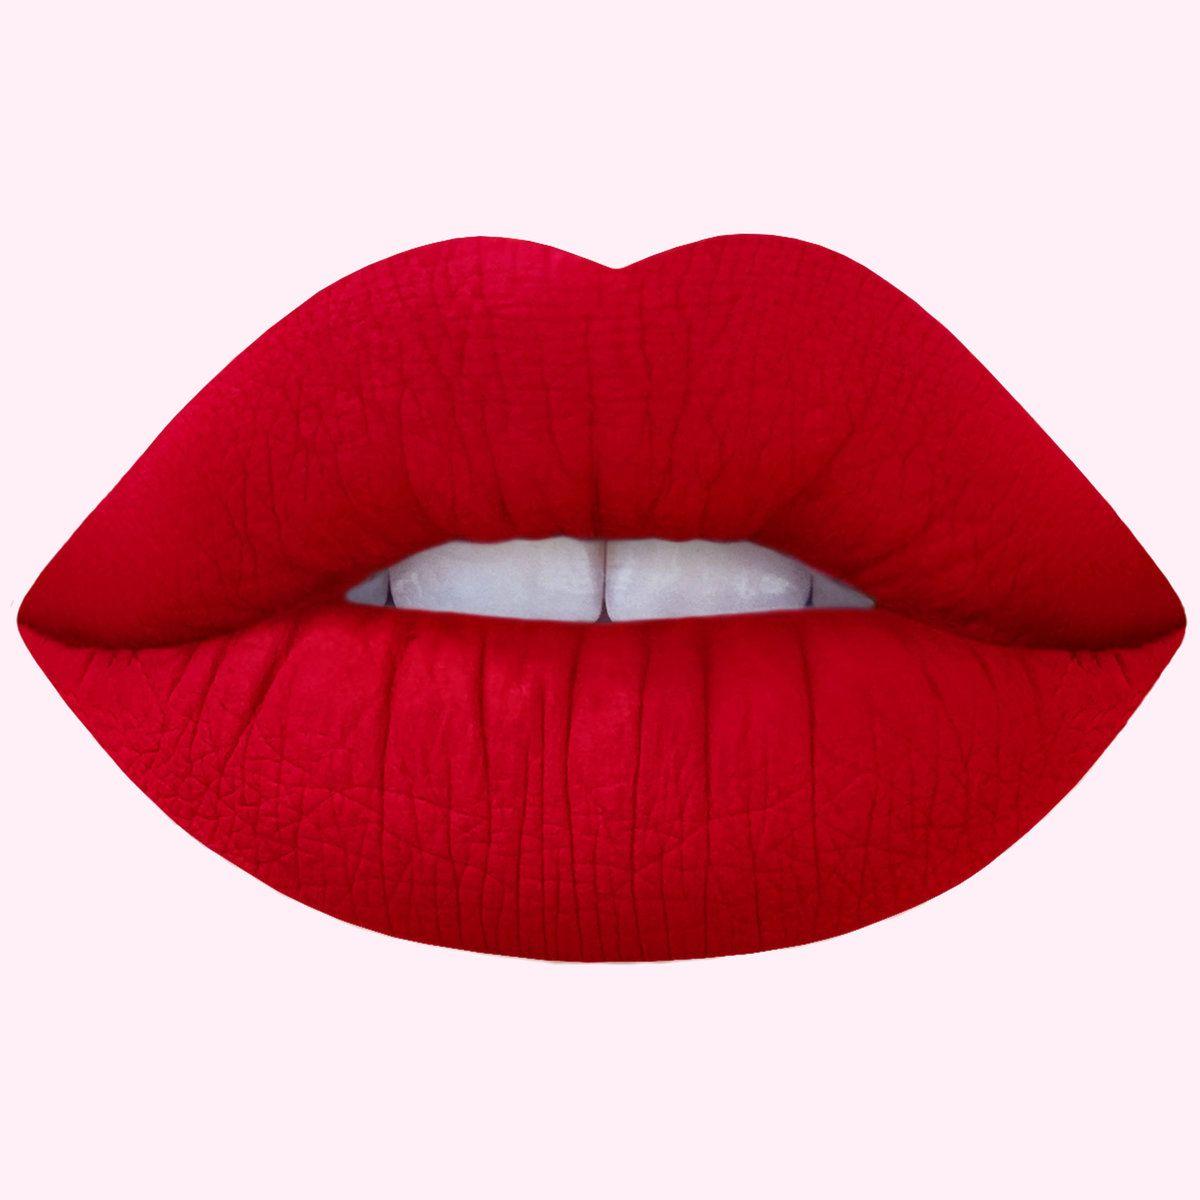 Red Lips and Mouth Logo - Red Velvet: True Red Matte Velvetines Vegan Lipstick